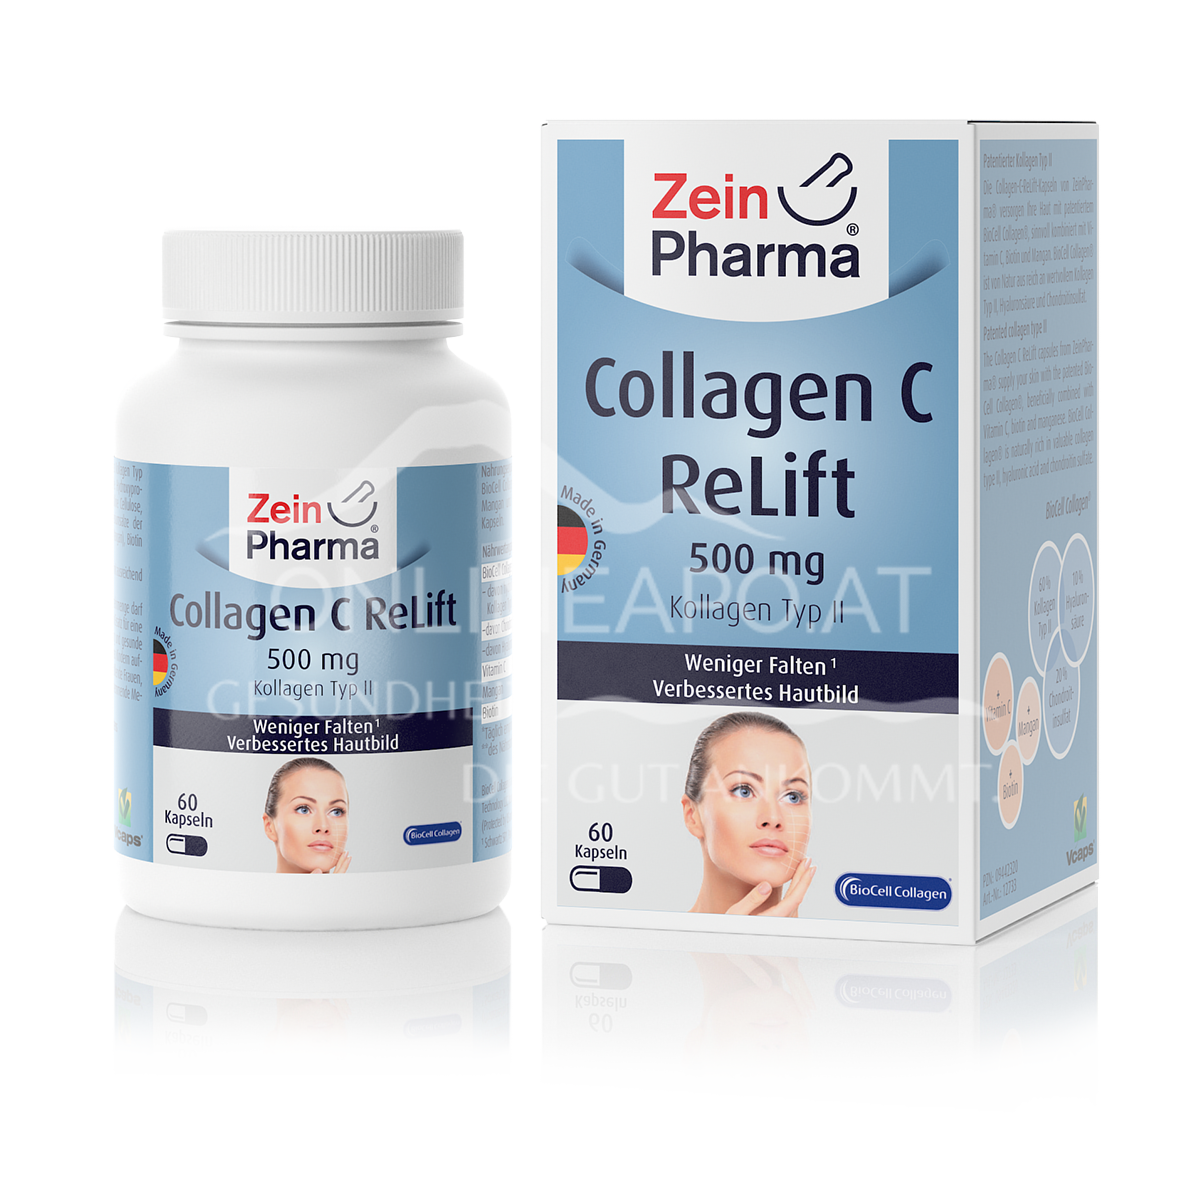 Zeinpharma Collagen C Relift Kapseln